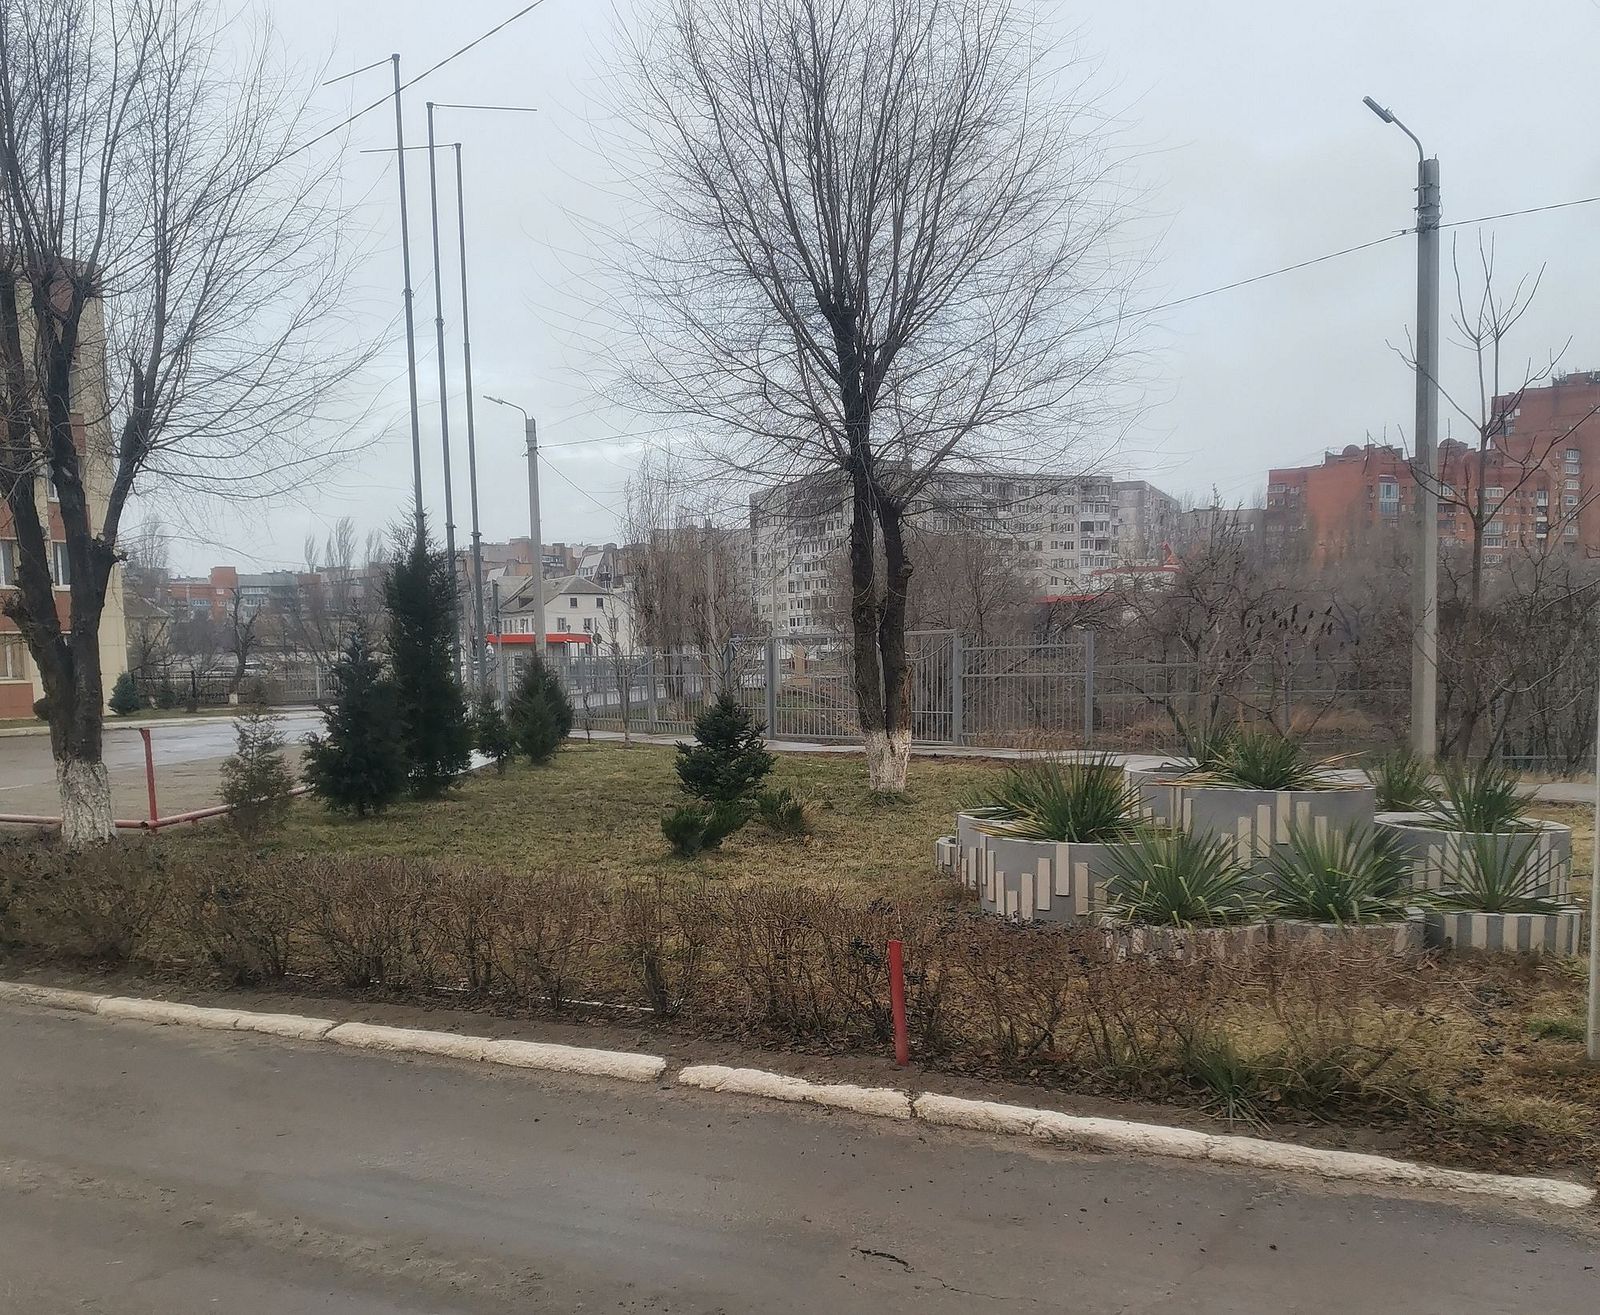 Красноармейский район Волгограда, изображение ландшафта.